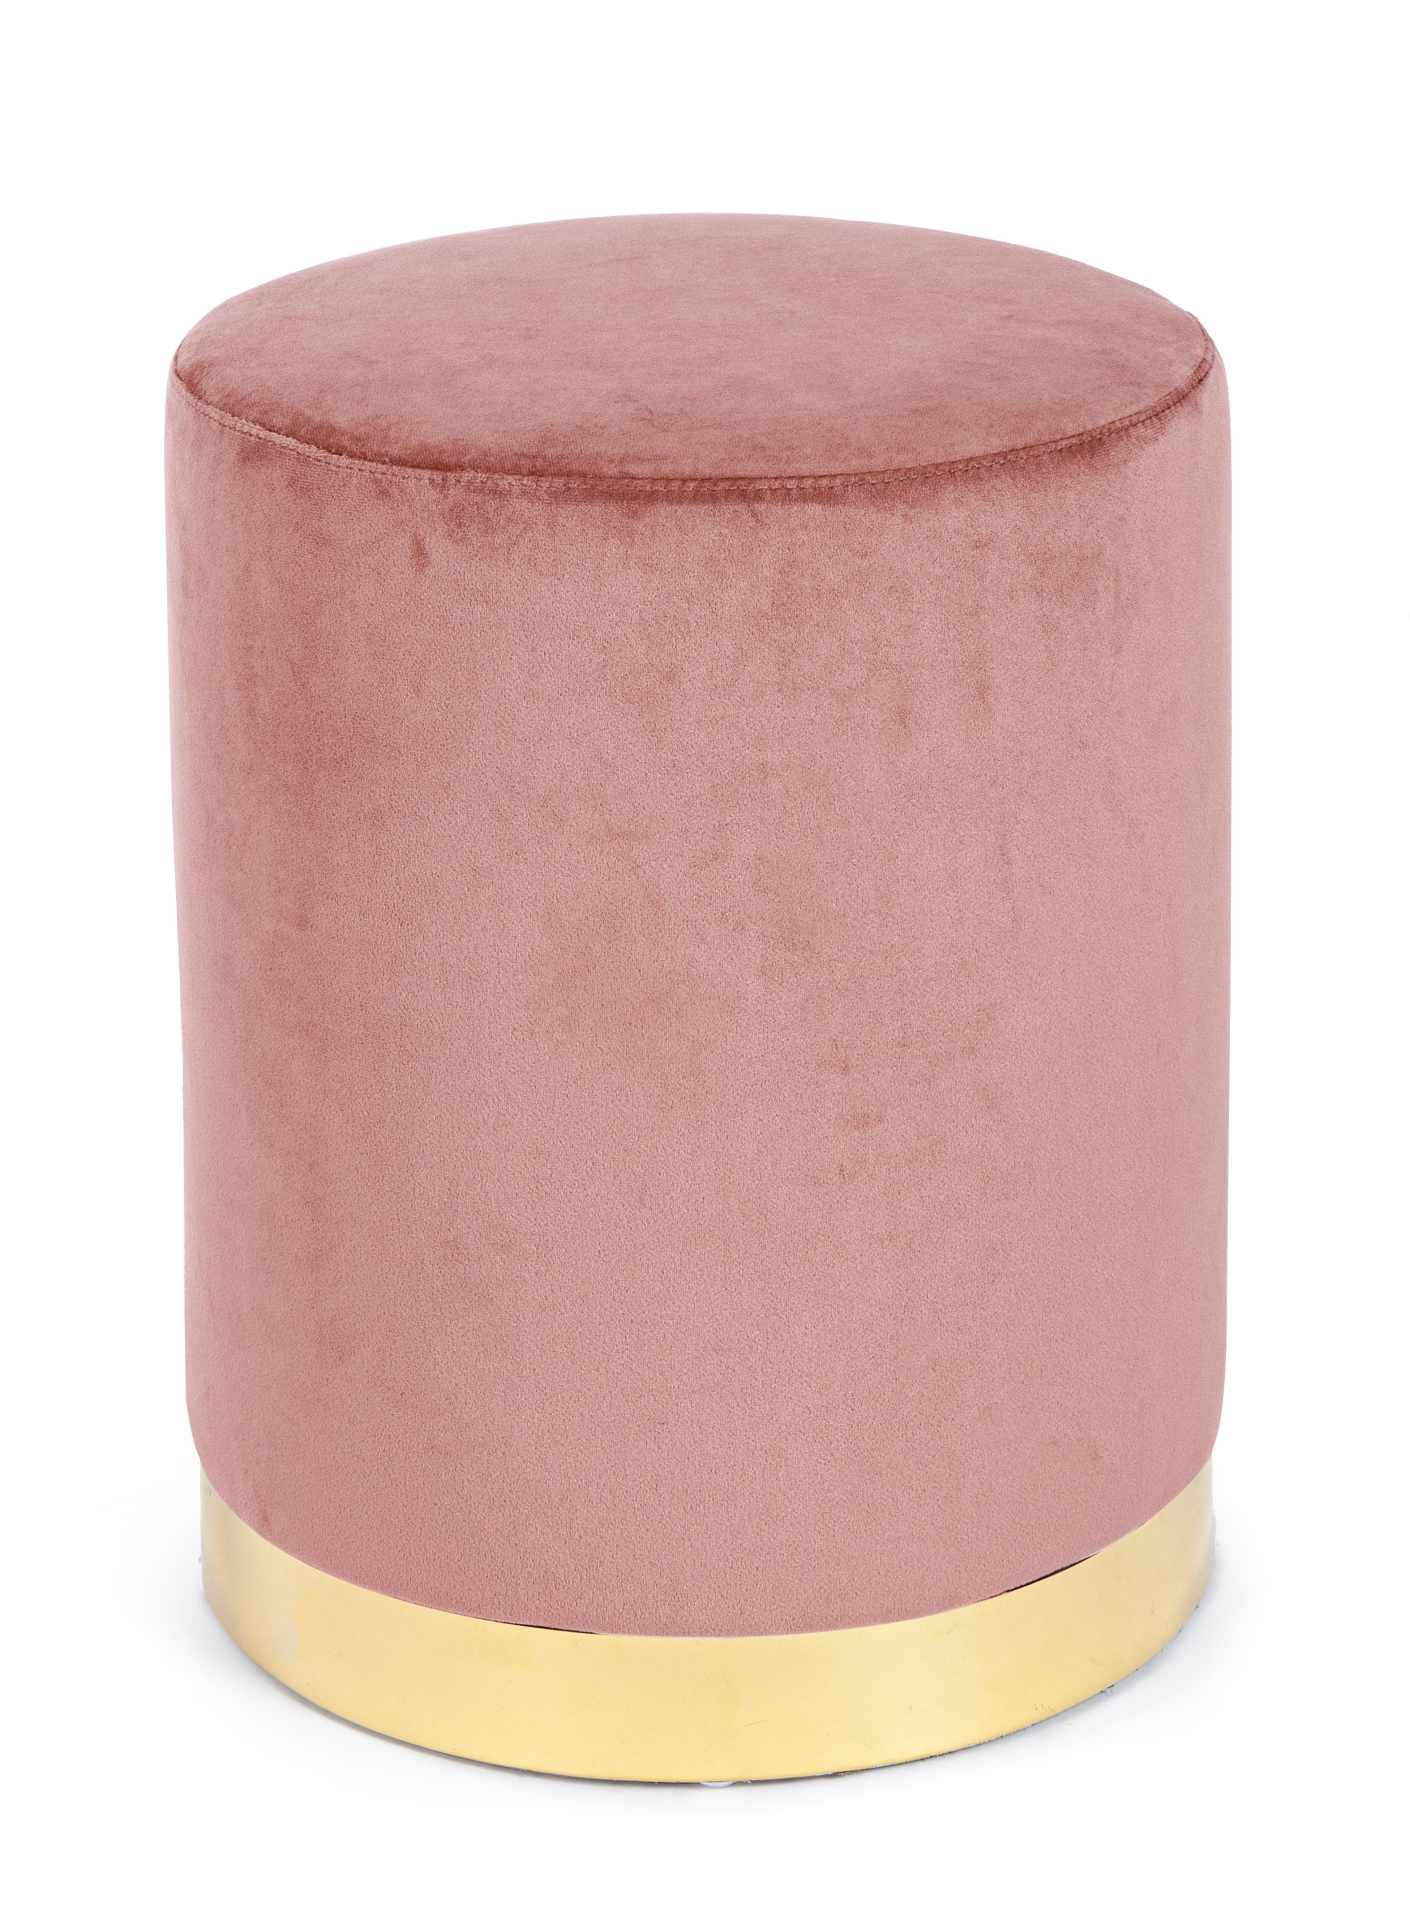 Der Pouf Lucilla überzeugt mit seinem modernen Design. Gefertigt wurde er aus Stoff in Samt-Optik, welcher einen rosa Farbton besitzt. Das Gestell ist aus Metall und hat eine goldene Farbe. Der Durchmesser beträgt 35 cm.